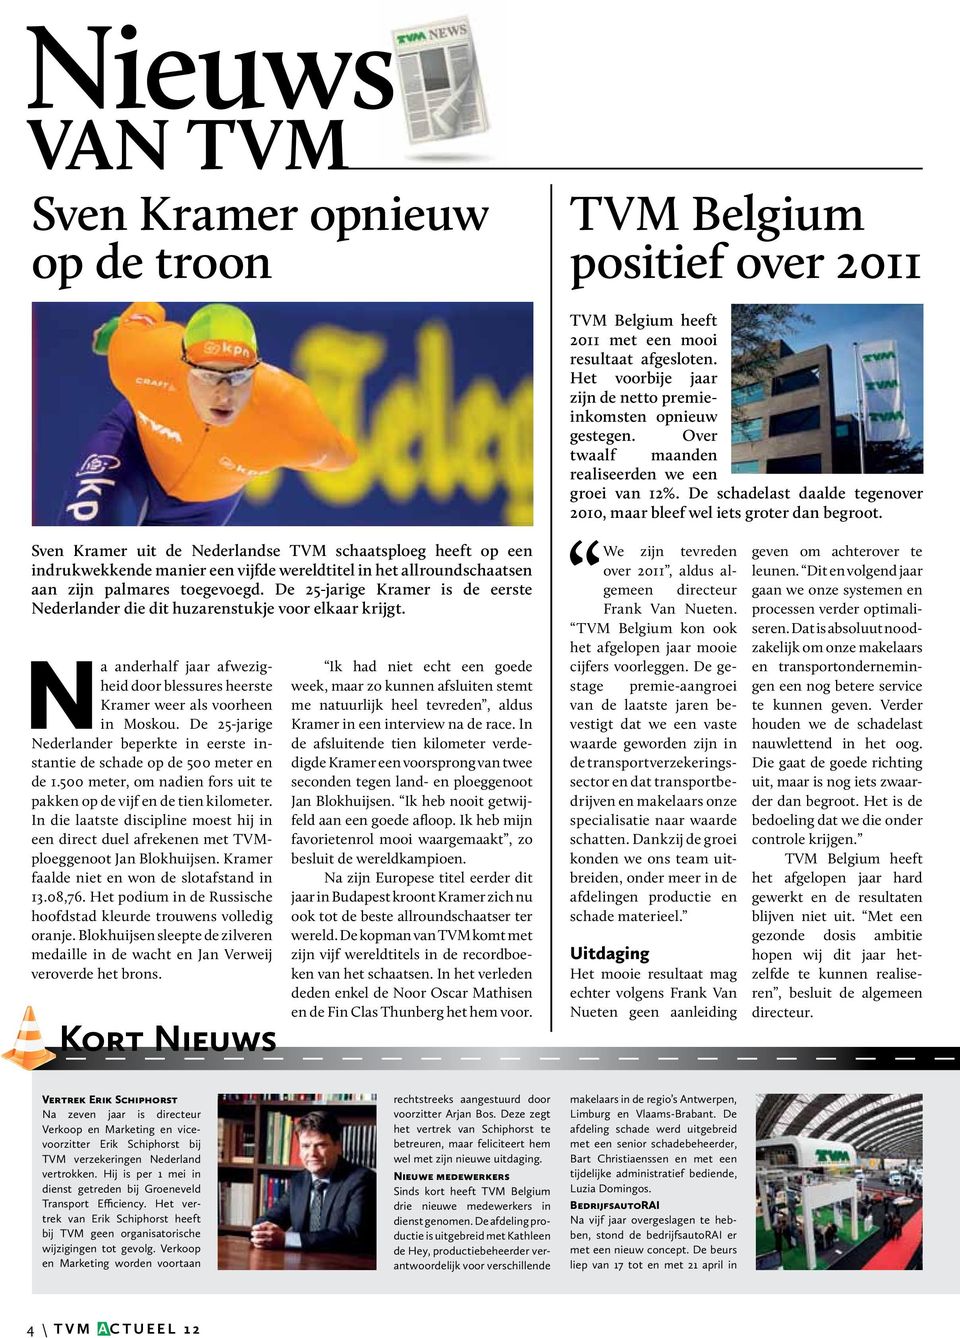 Sven Kramer uit de Nederlandse TVM schaatsploeg heeft op een indrukwekkende manier een vijfde wereldtitel in het allroundschaatsen aan zijn palmares toegevoegd.